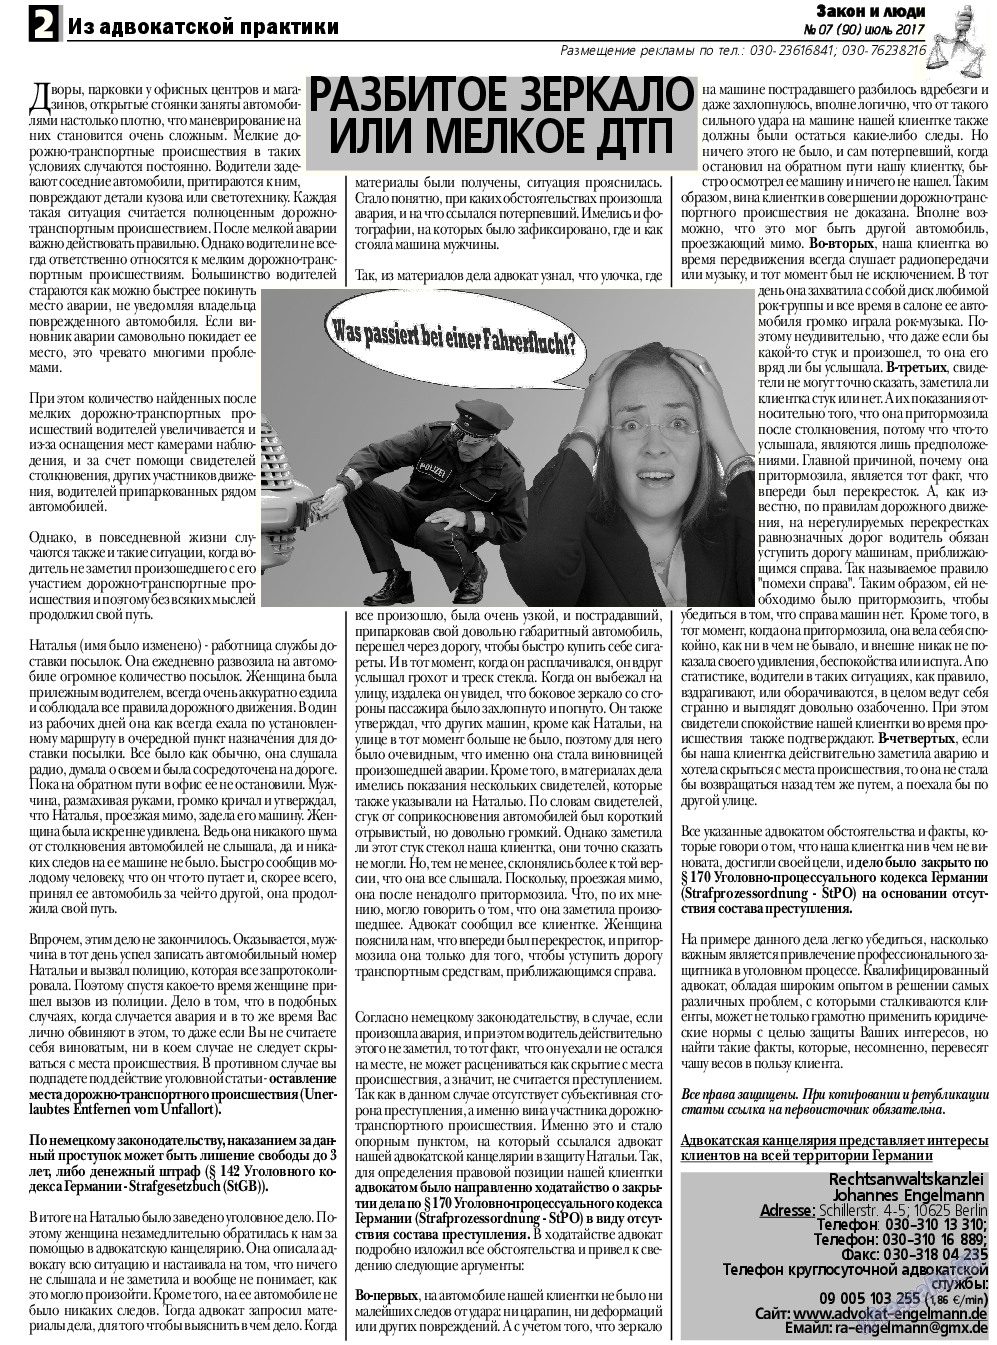 Закон и люди, газета. 2017 №7 стр.2